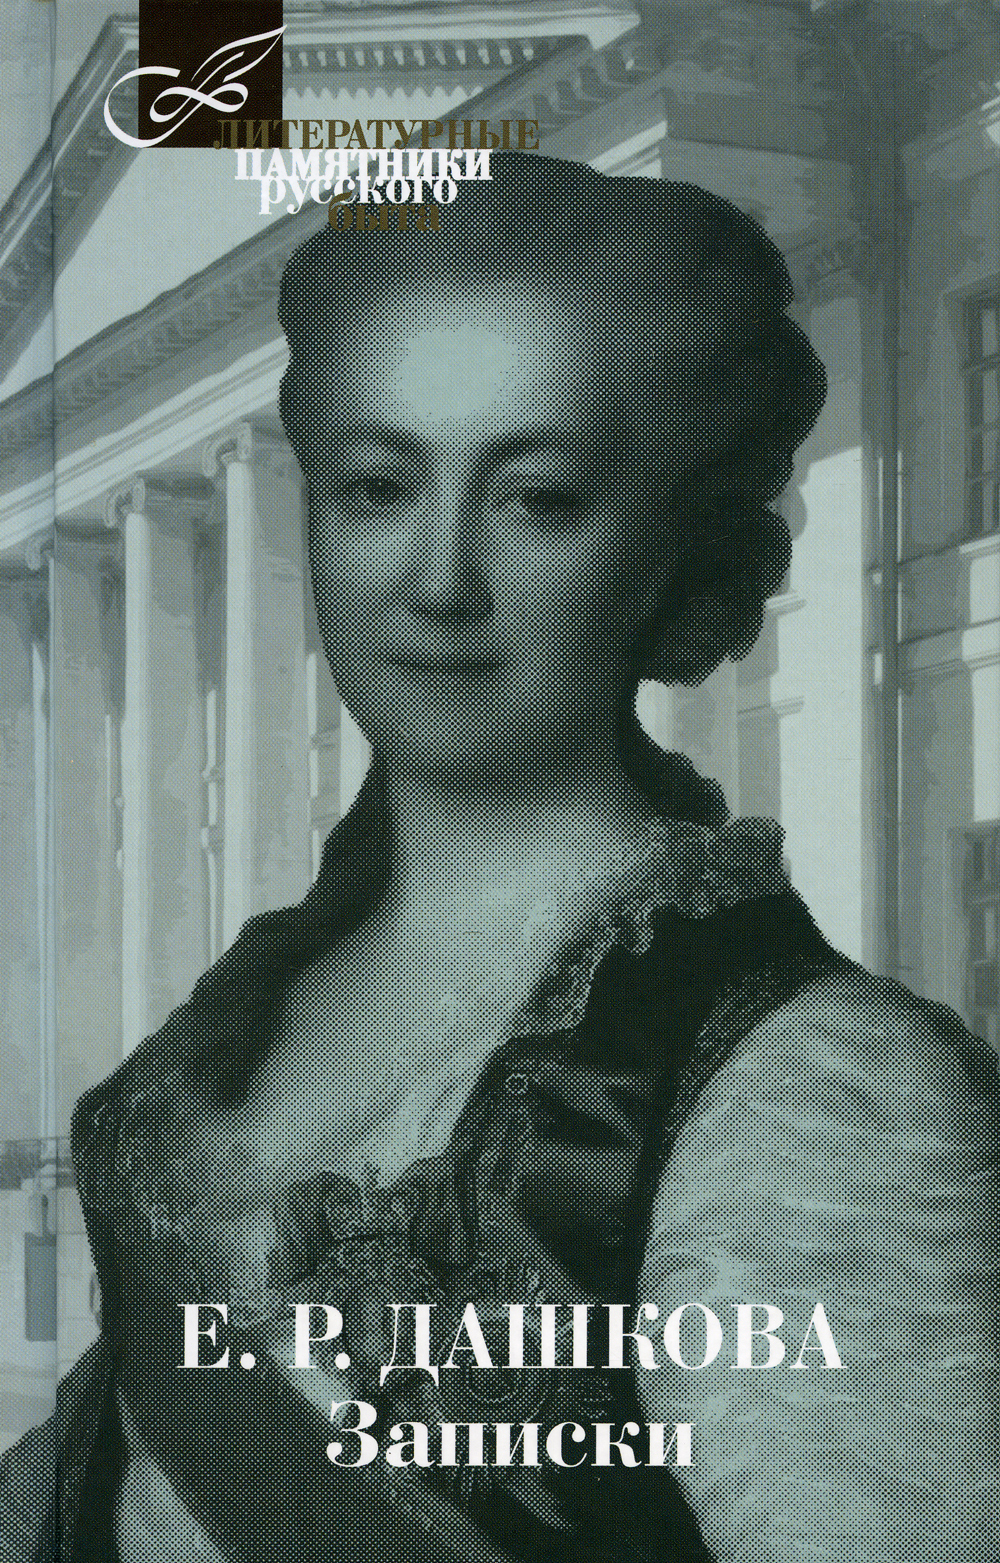 Дашкова, Екатерина Екатерина Дашкова. Записки. 1743-1810